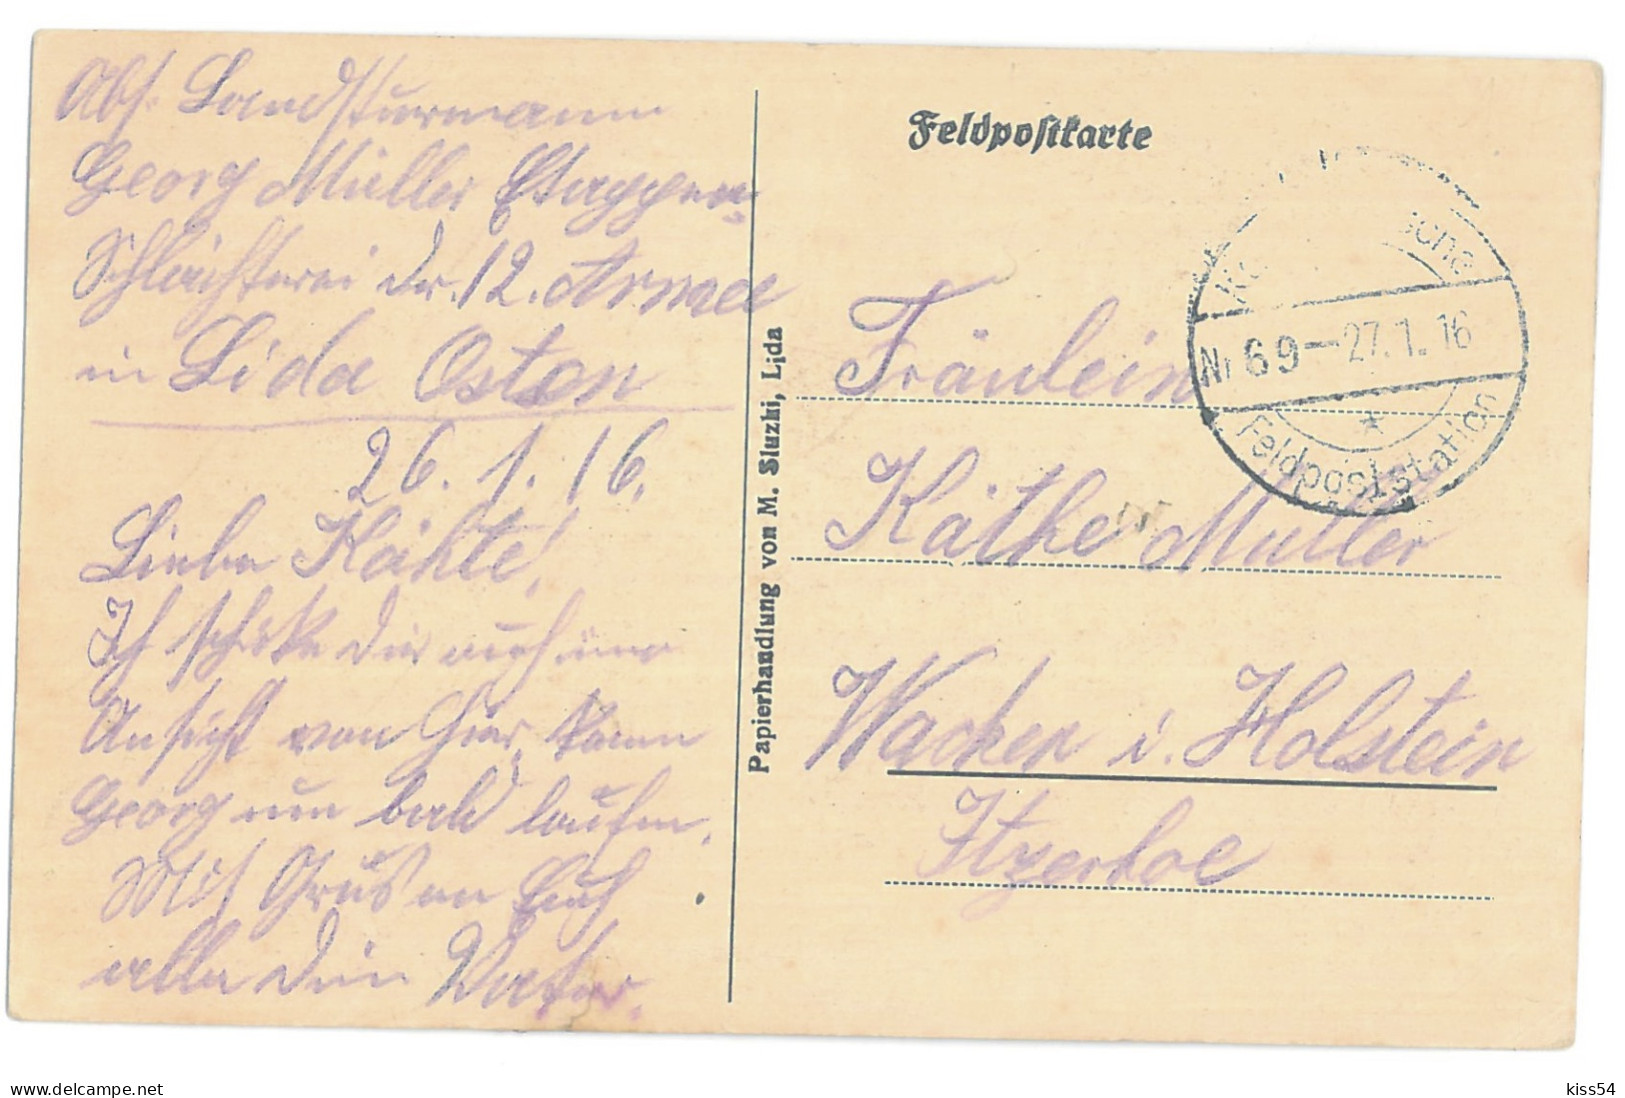 BL 32 - 14637 LIDA, House In Fire, Belarus - Old Postcard, CENSOR - Used - 1916 - Belarus